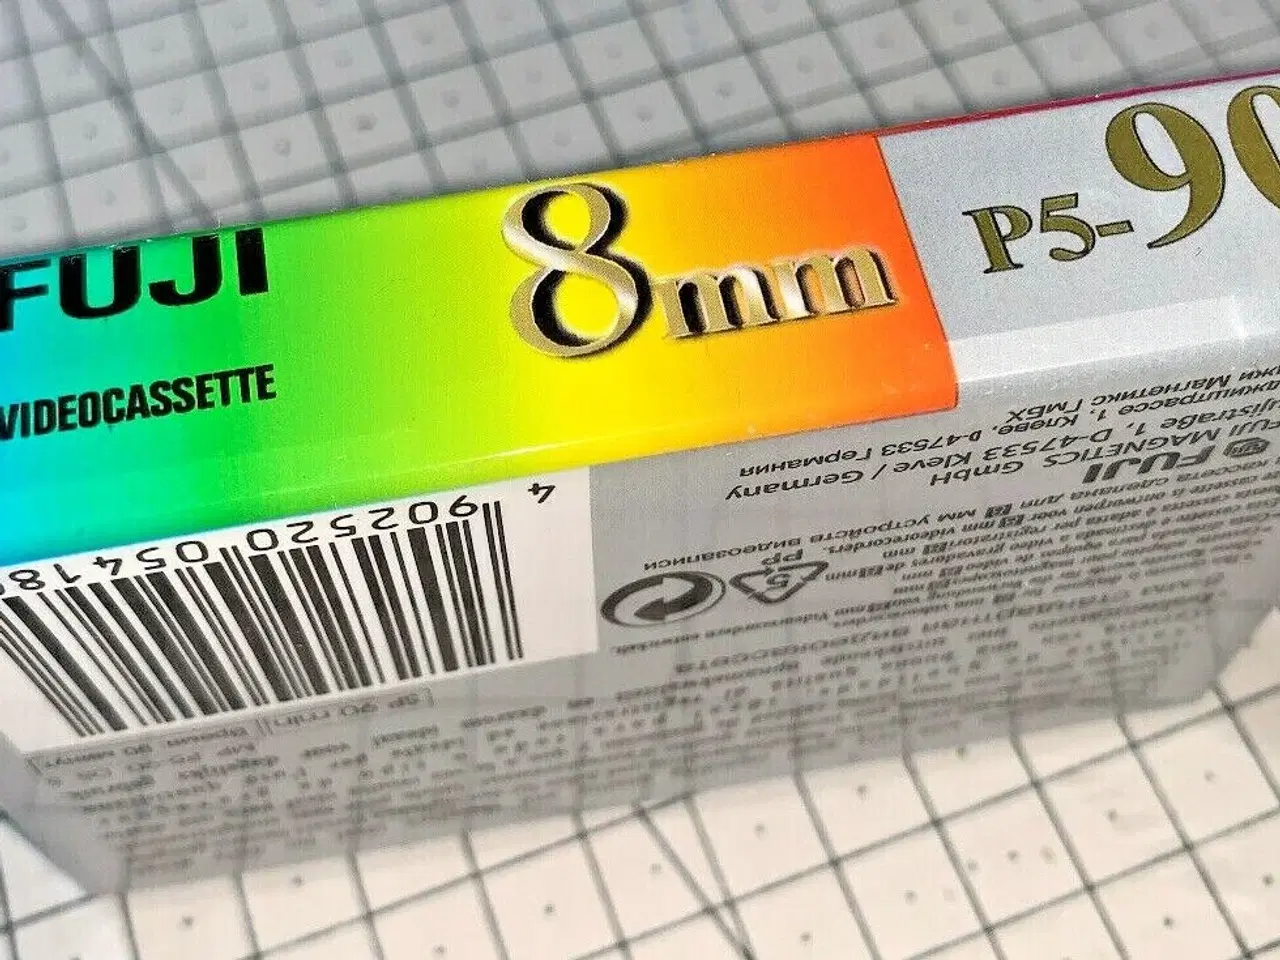 Billede 2 - FUJI P5-90 90 minuter 8mm Videocassette Tape